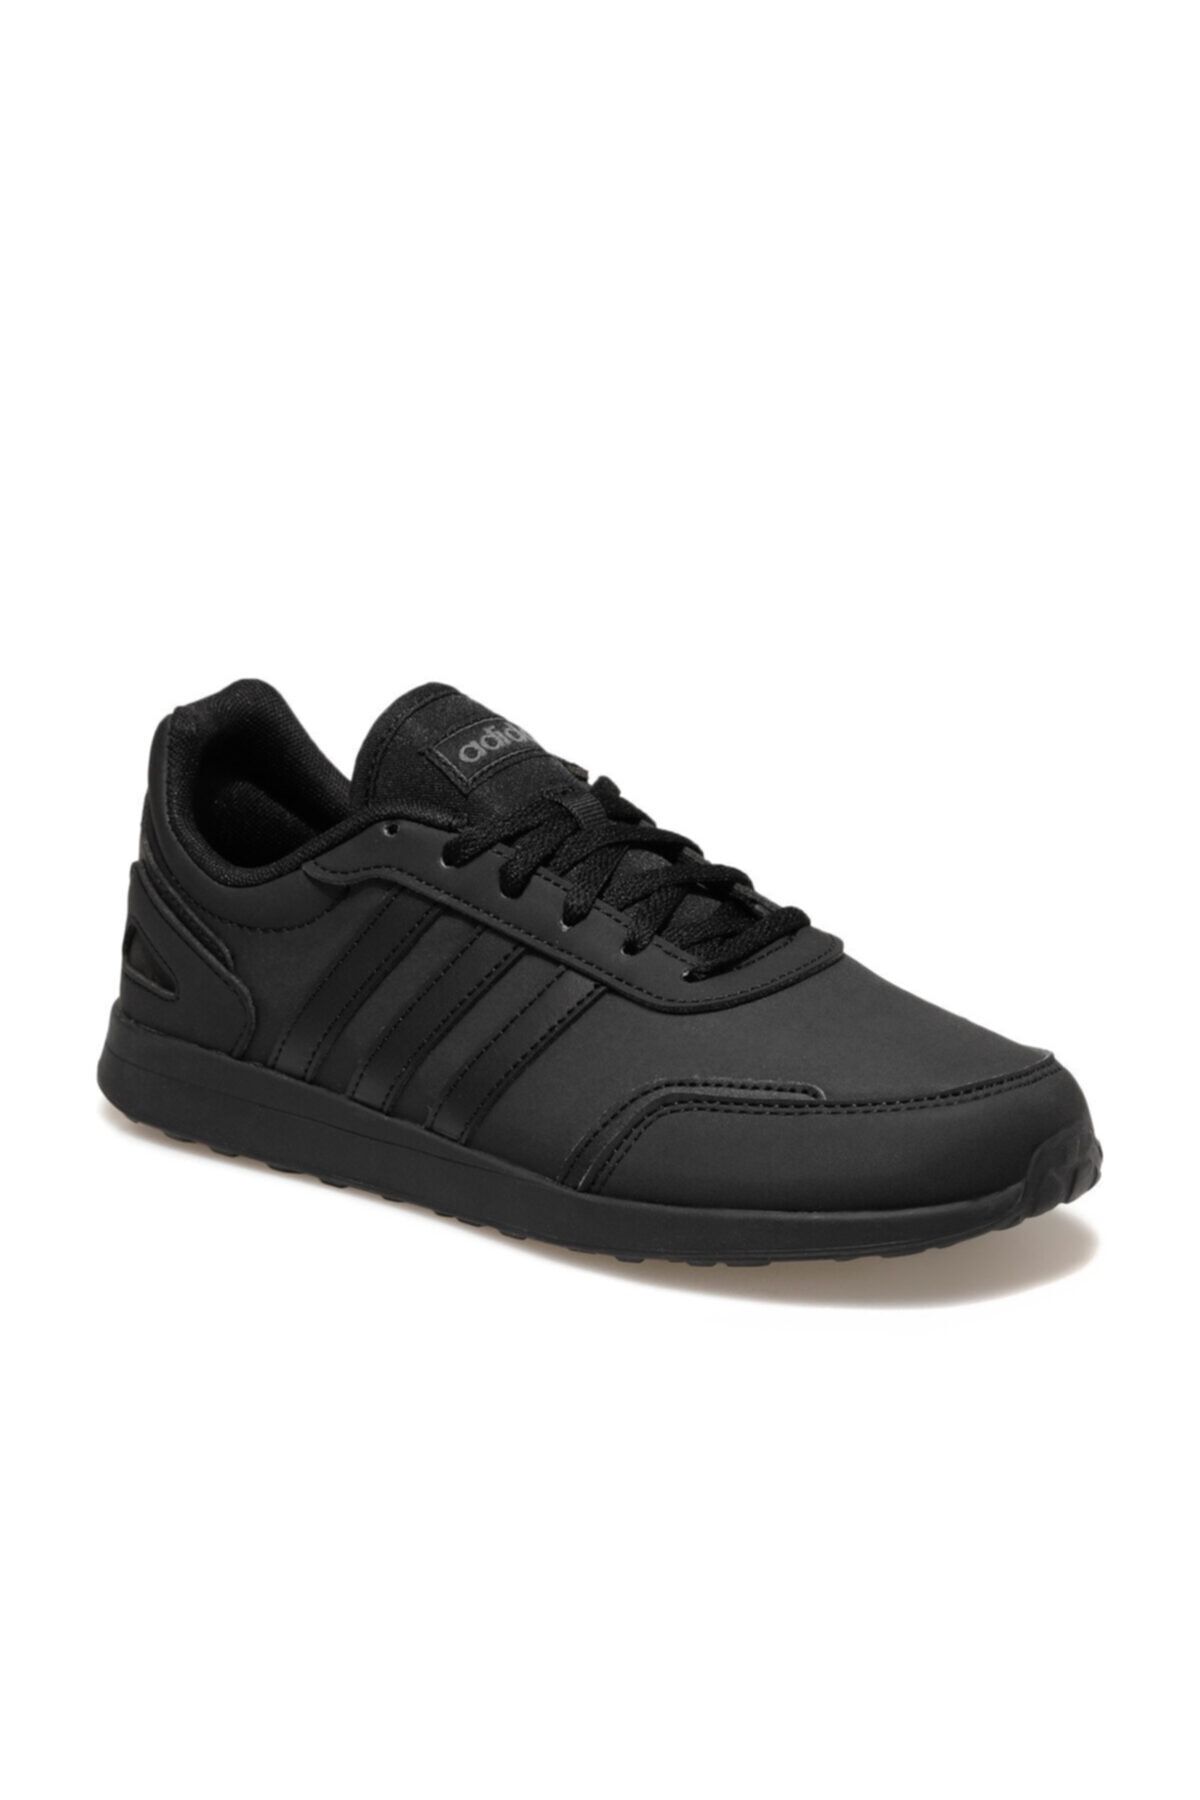 adidas VS SWITCH 3 K Siyah Erkek Çocuk Sneaker Ayakkabı 100663824